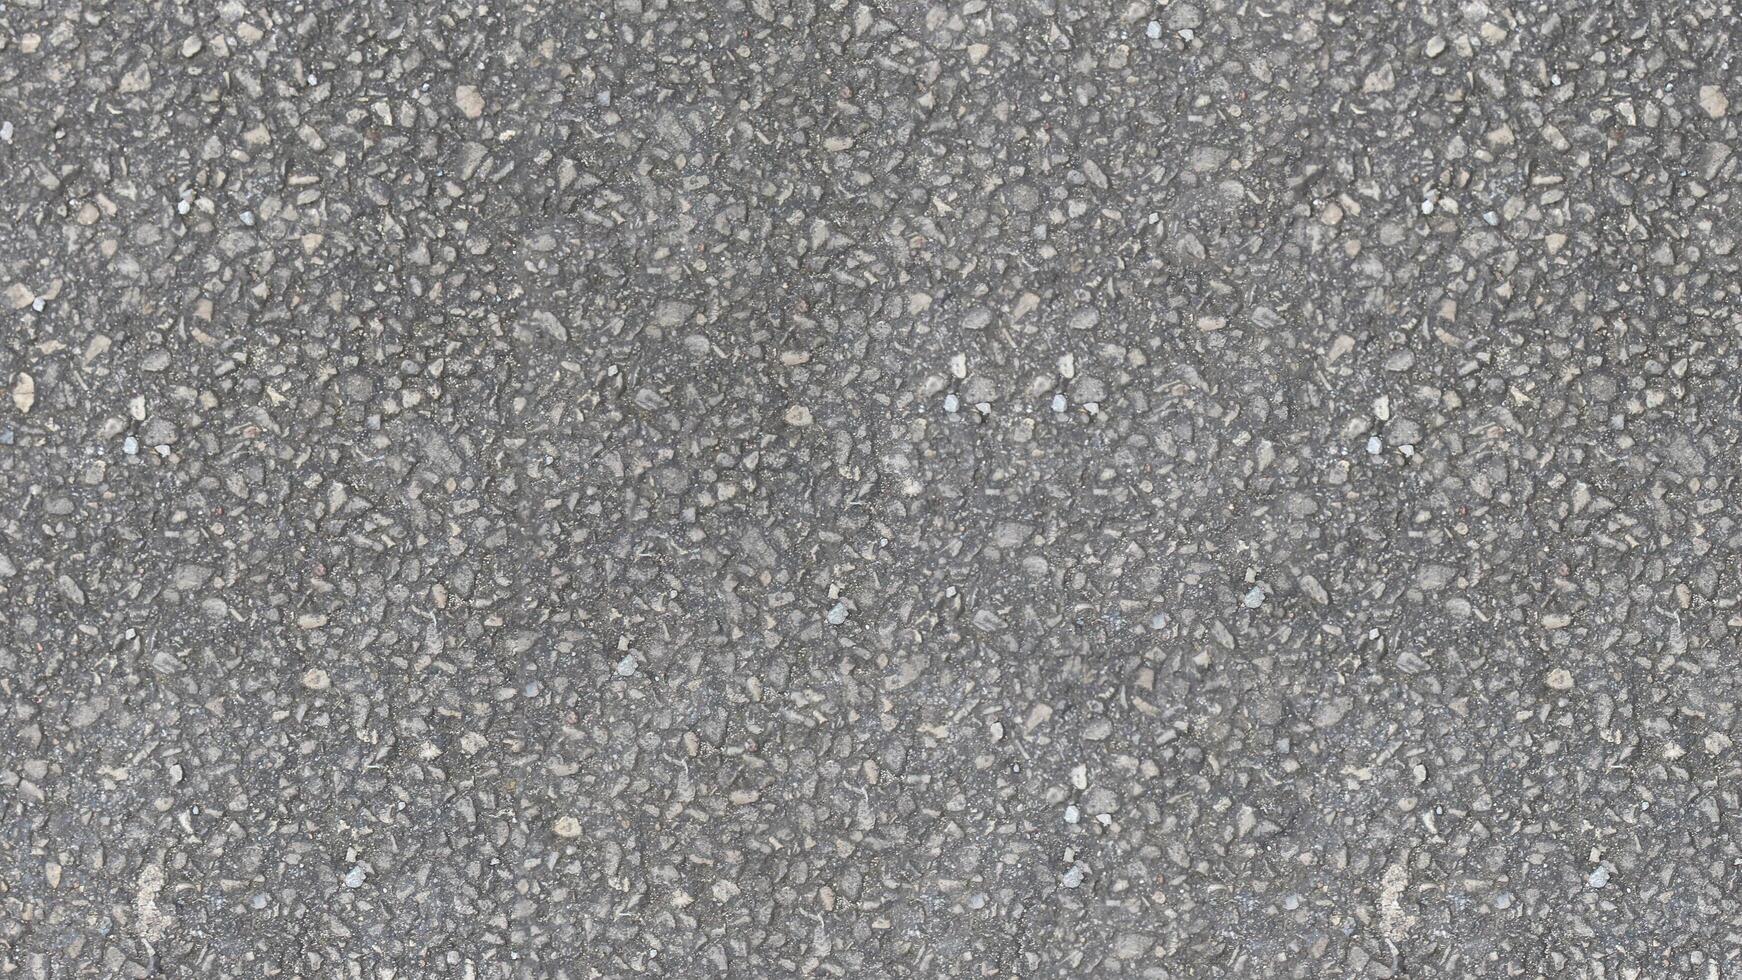 ai gegenereerd een uniform grijs asfalt structuur gemaakt omhoog van klein stenen en steentjes in variërend tinten van grijs Leuk vinden weg structuur achtergrond foto